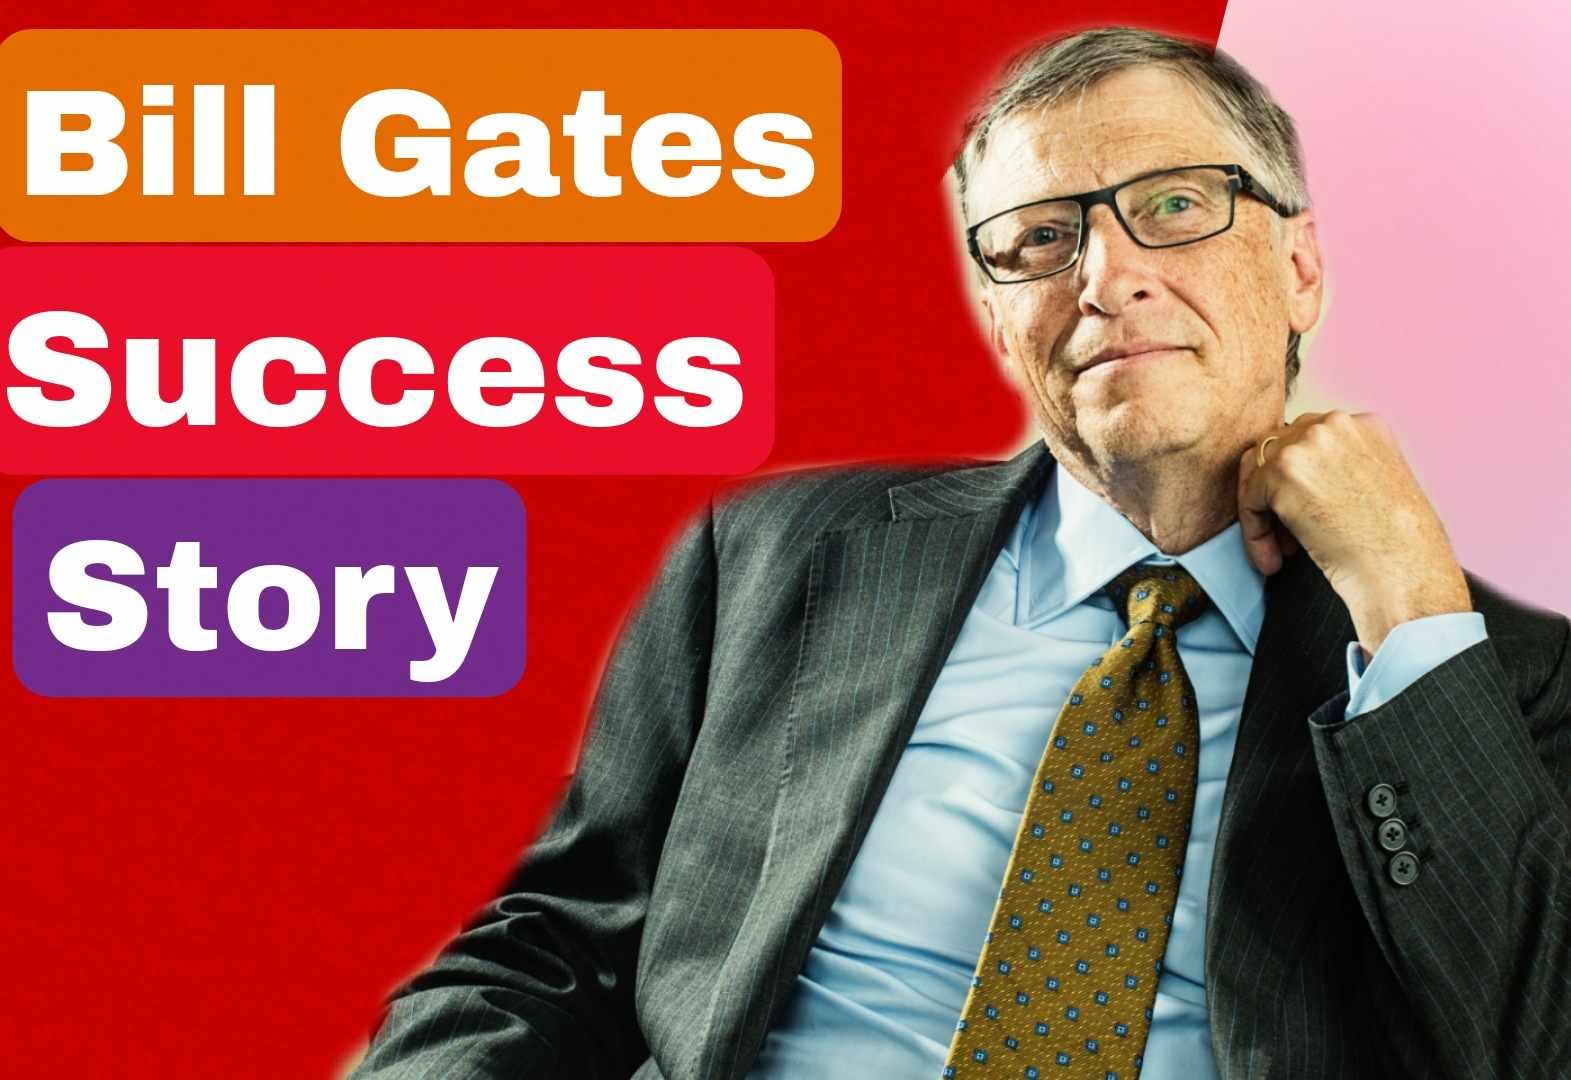 Success Story Of Bill Gates (बिल गेट्स की सफलता की कहानी)